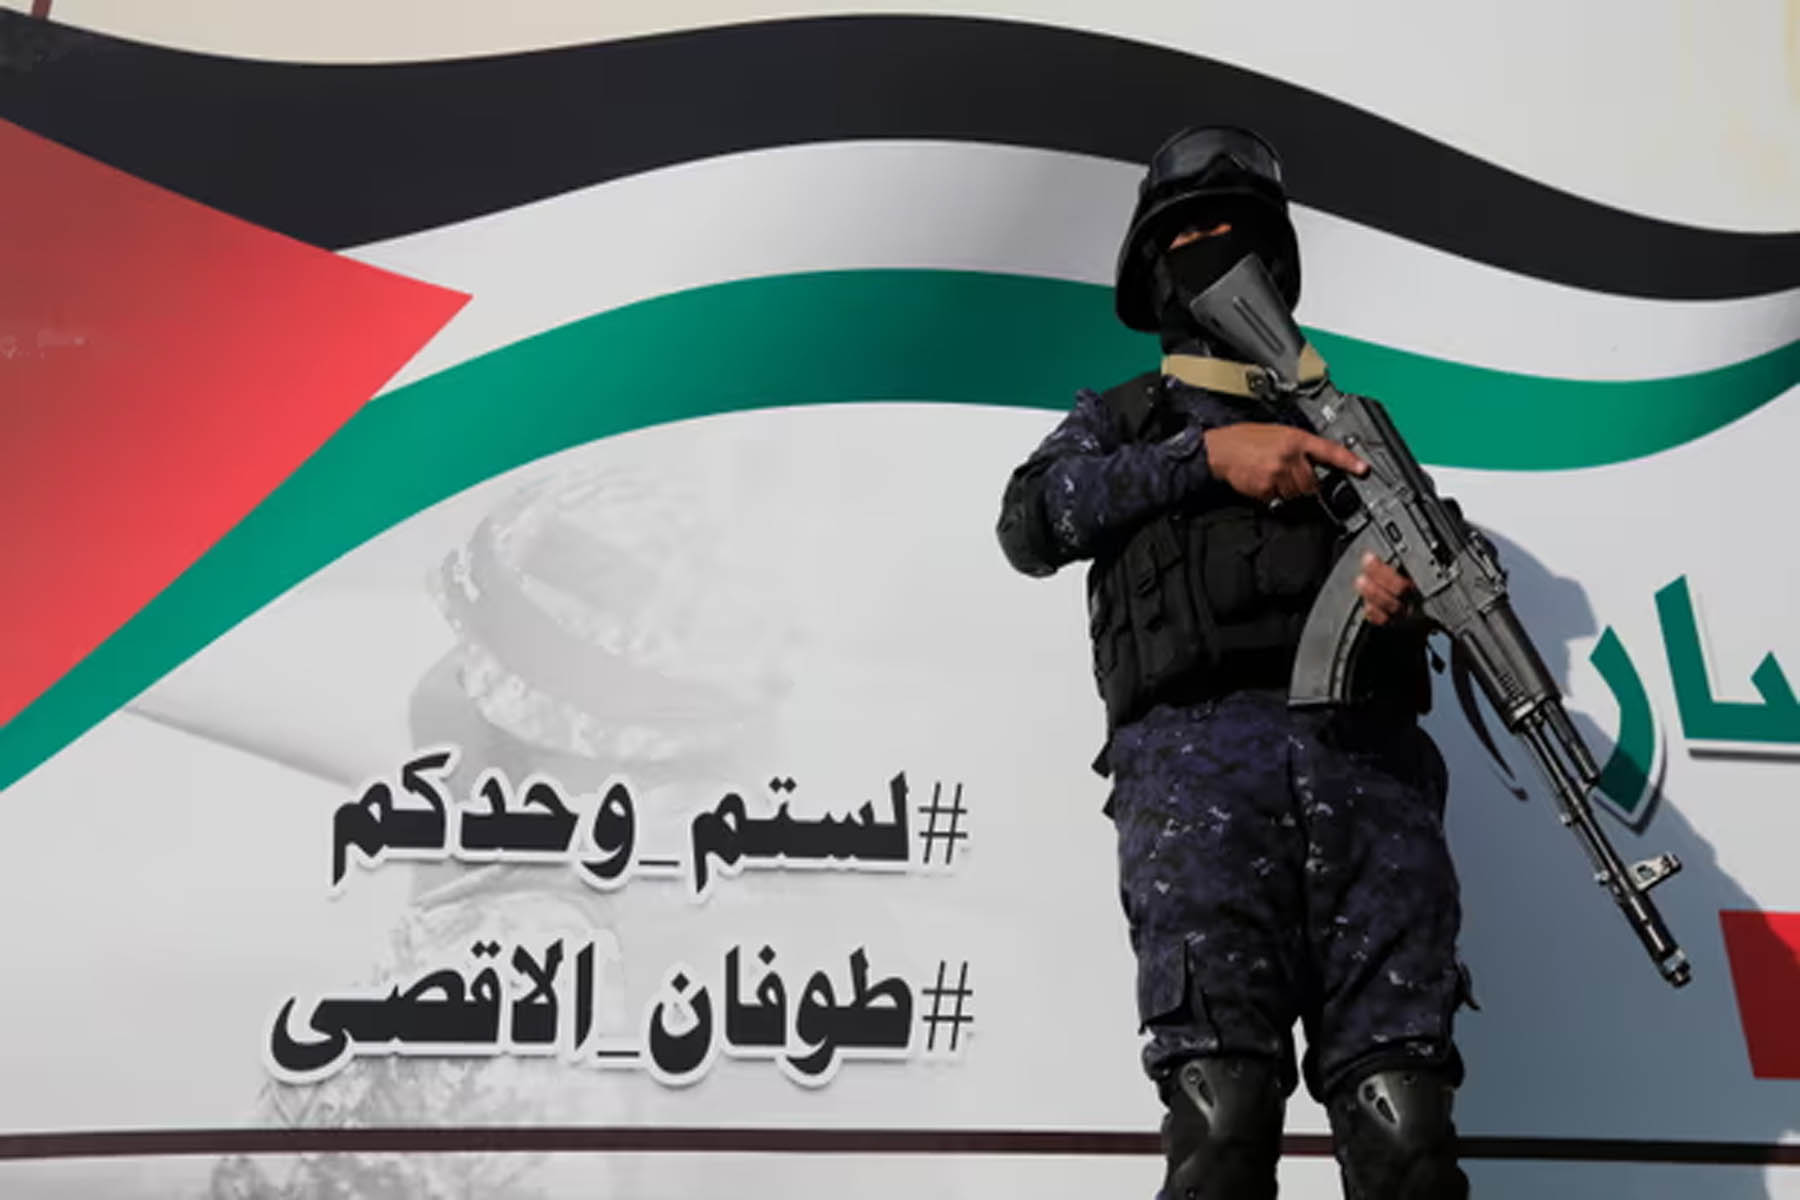 جنگ اسرائیل در غزه می تواند جرقه درگیری گسترده تر بین آمریکا، جمهوری اسلامی یا دیگران باشد